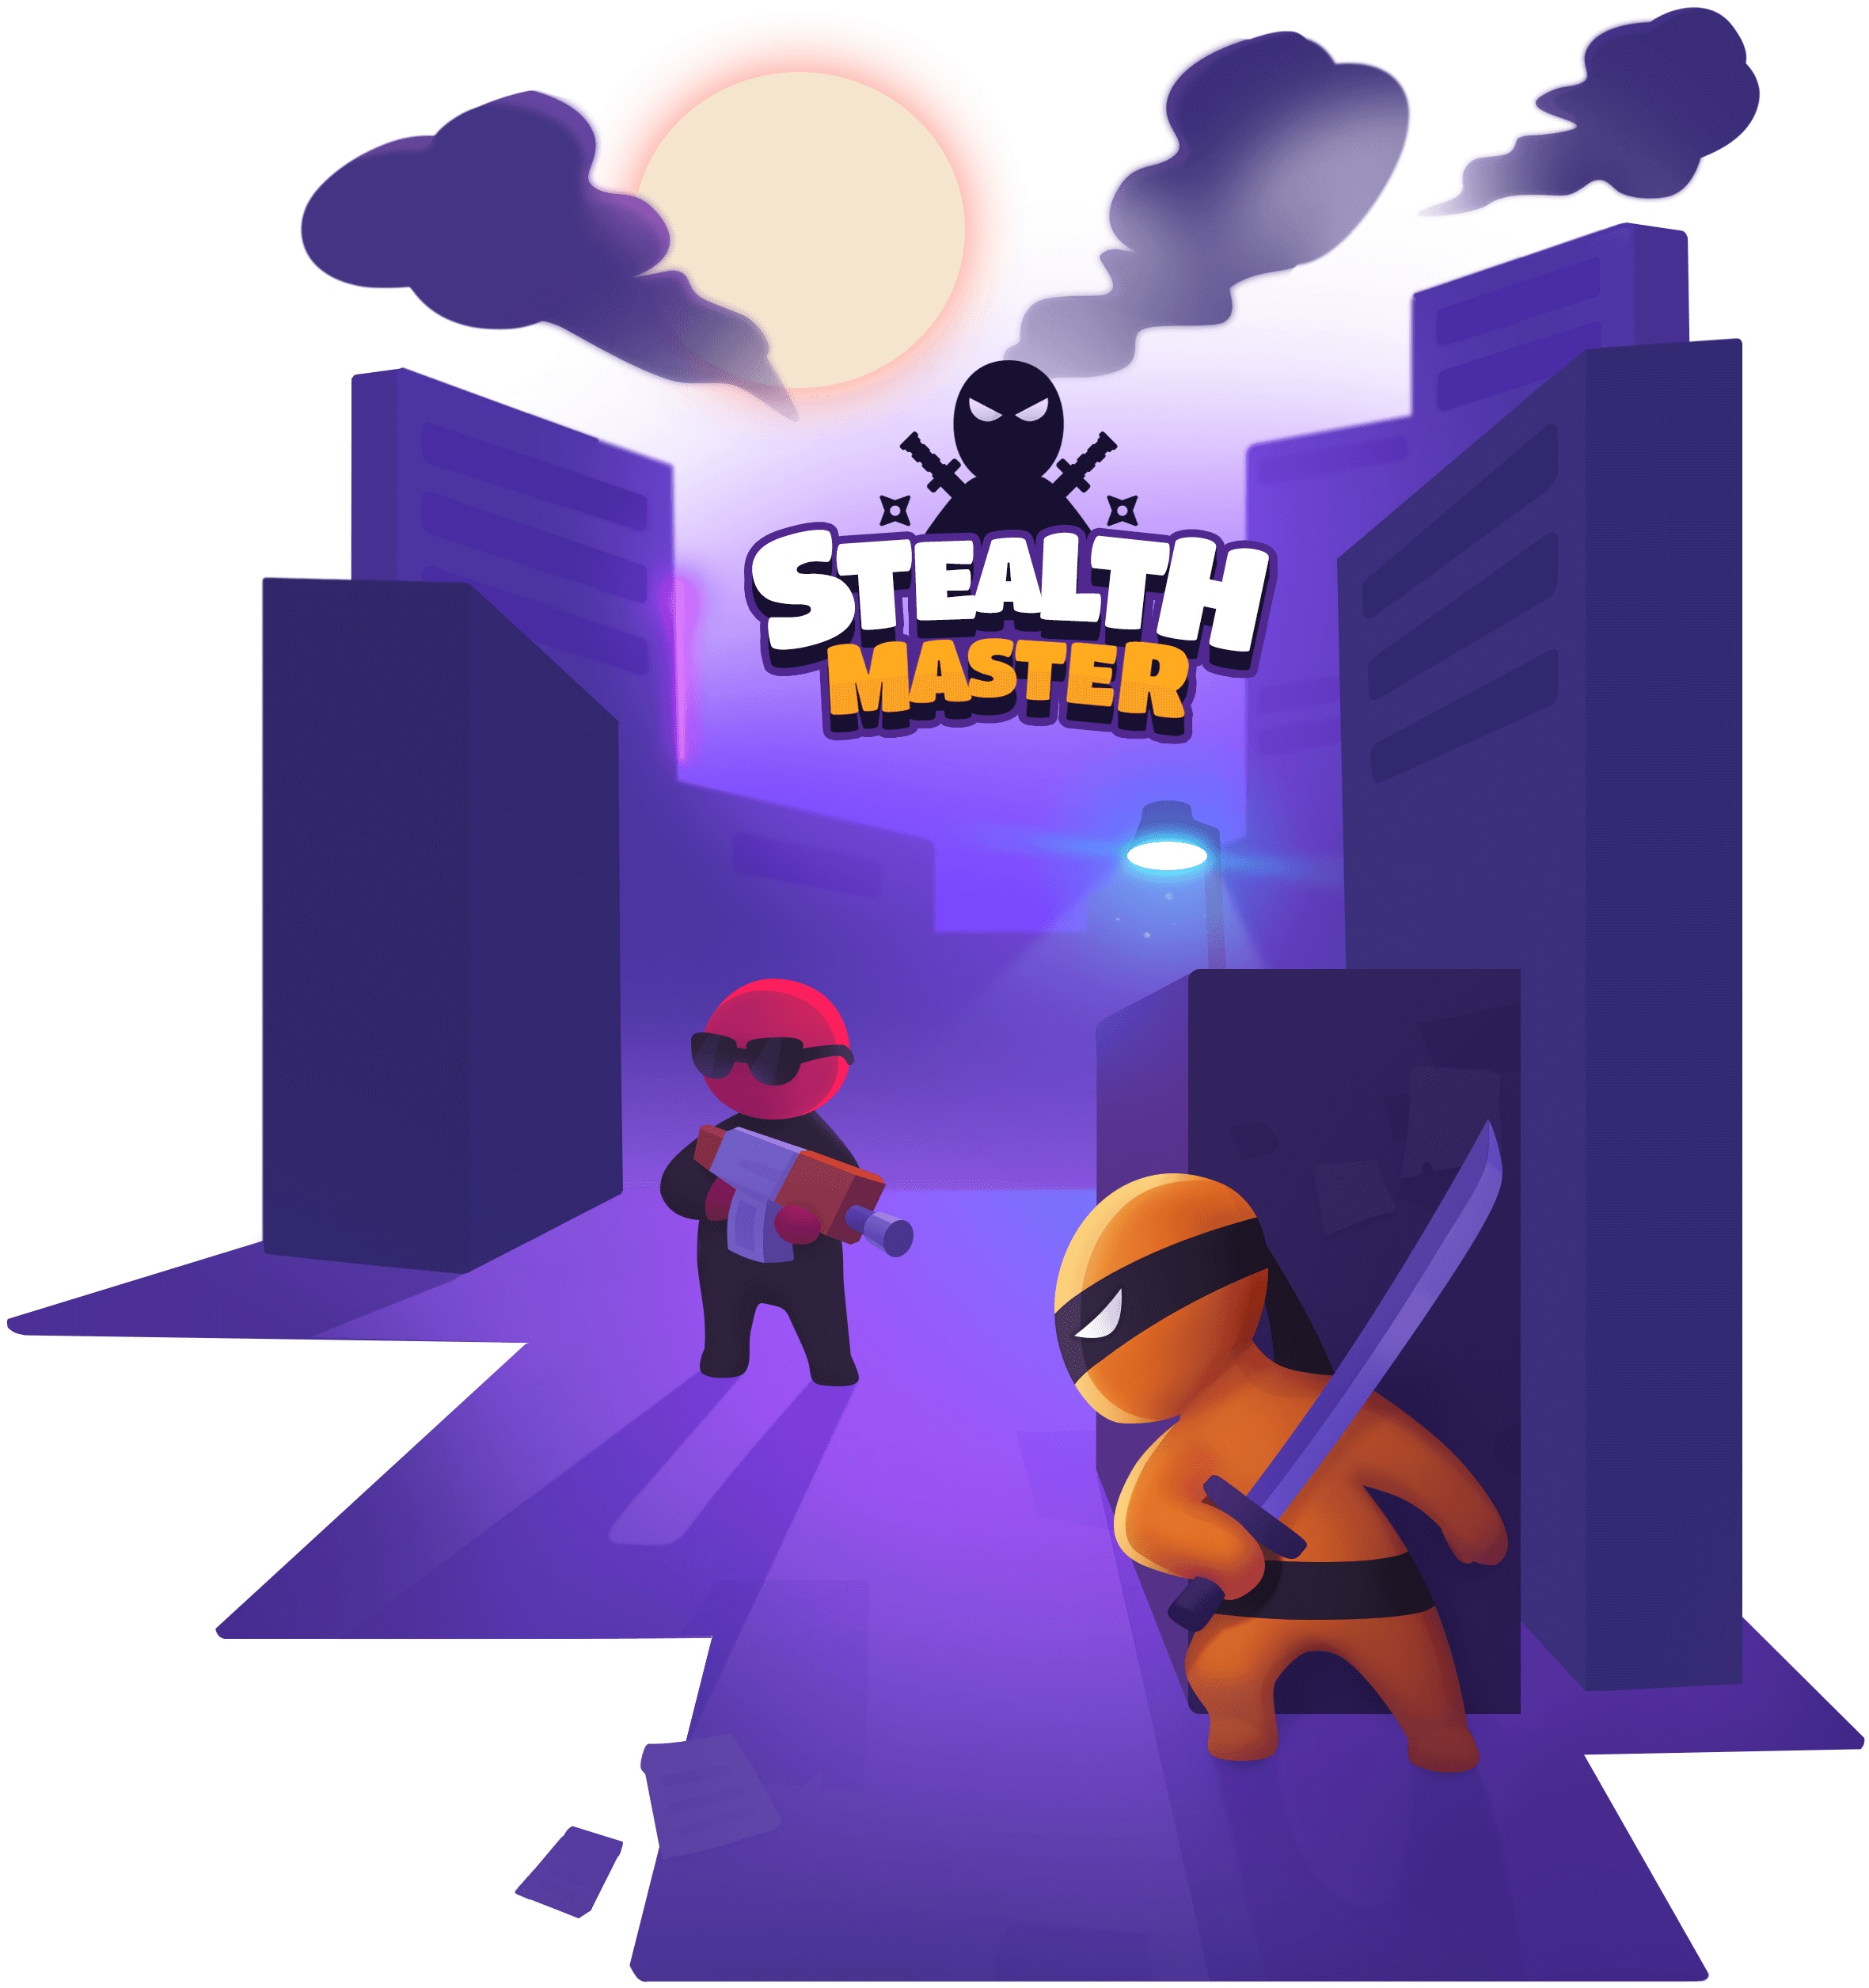 بازی Stealth Master: مخفی کاری به سبک نینجا!